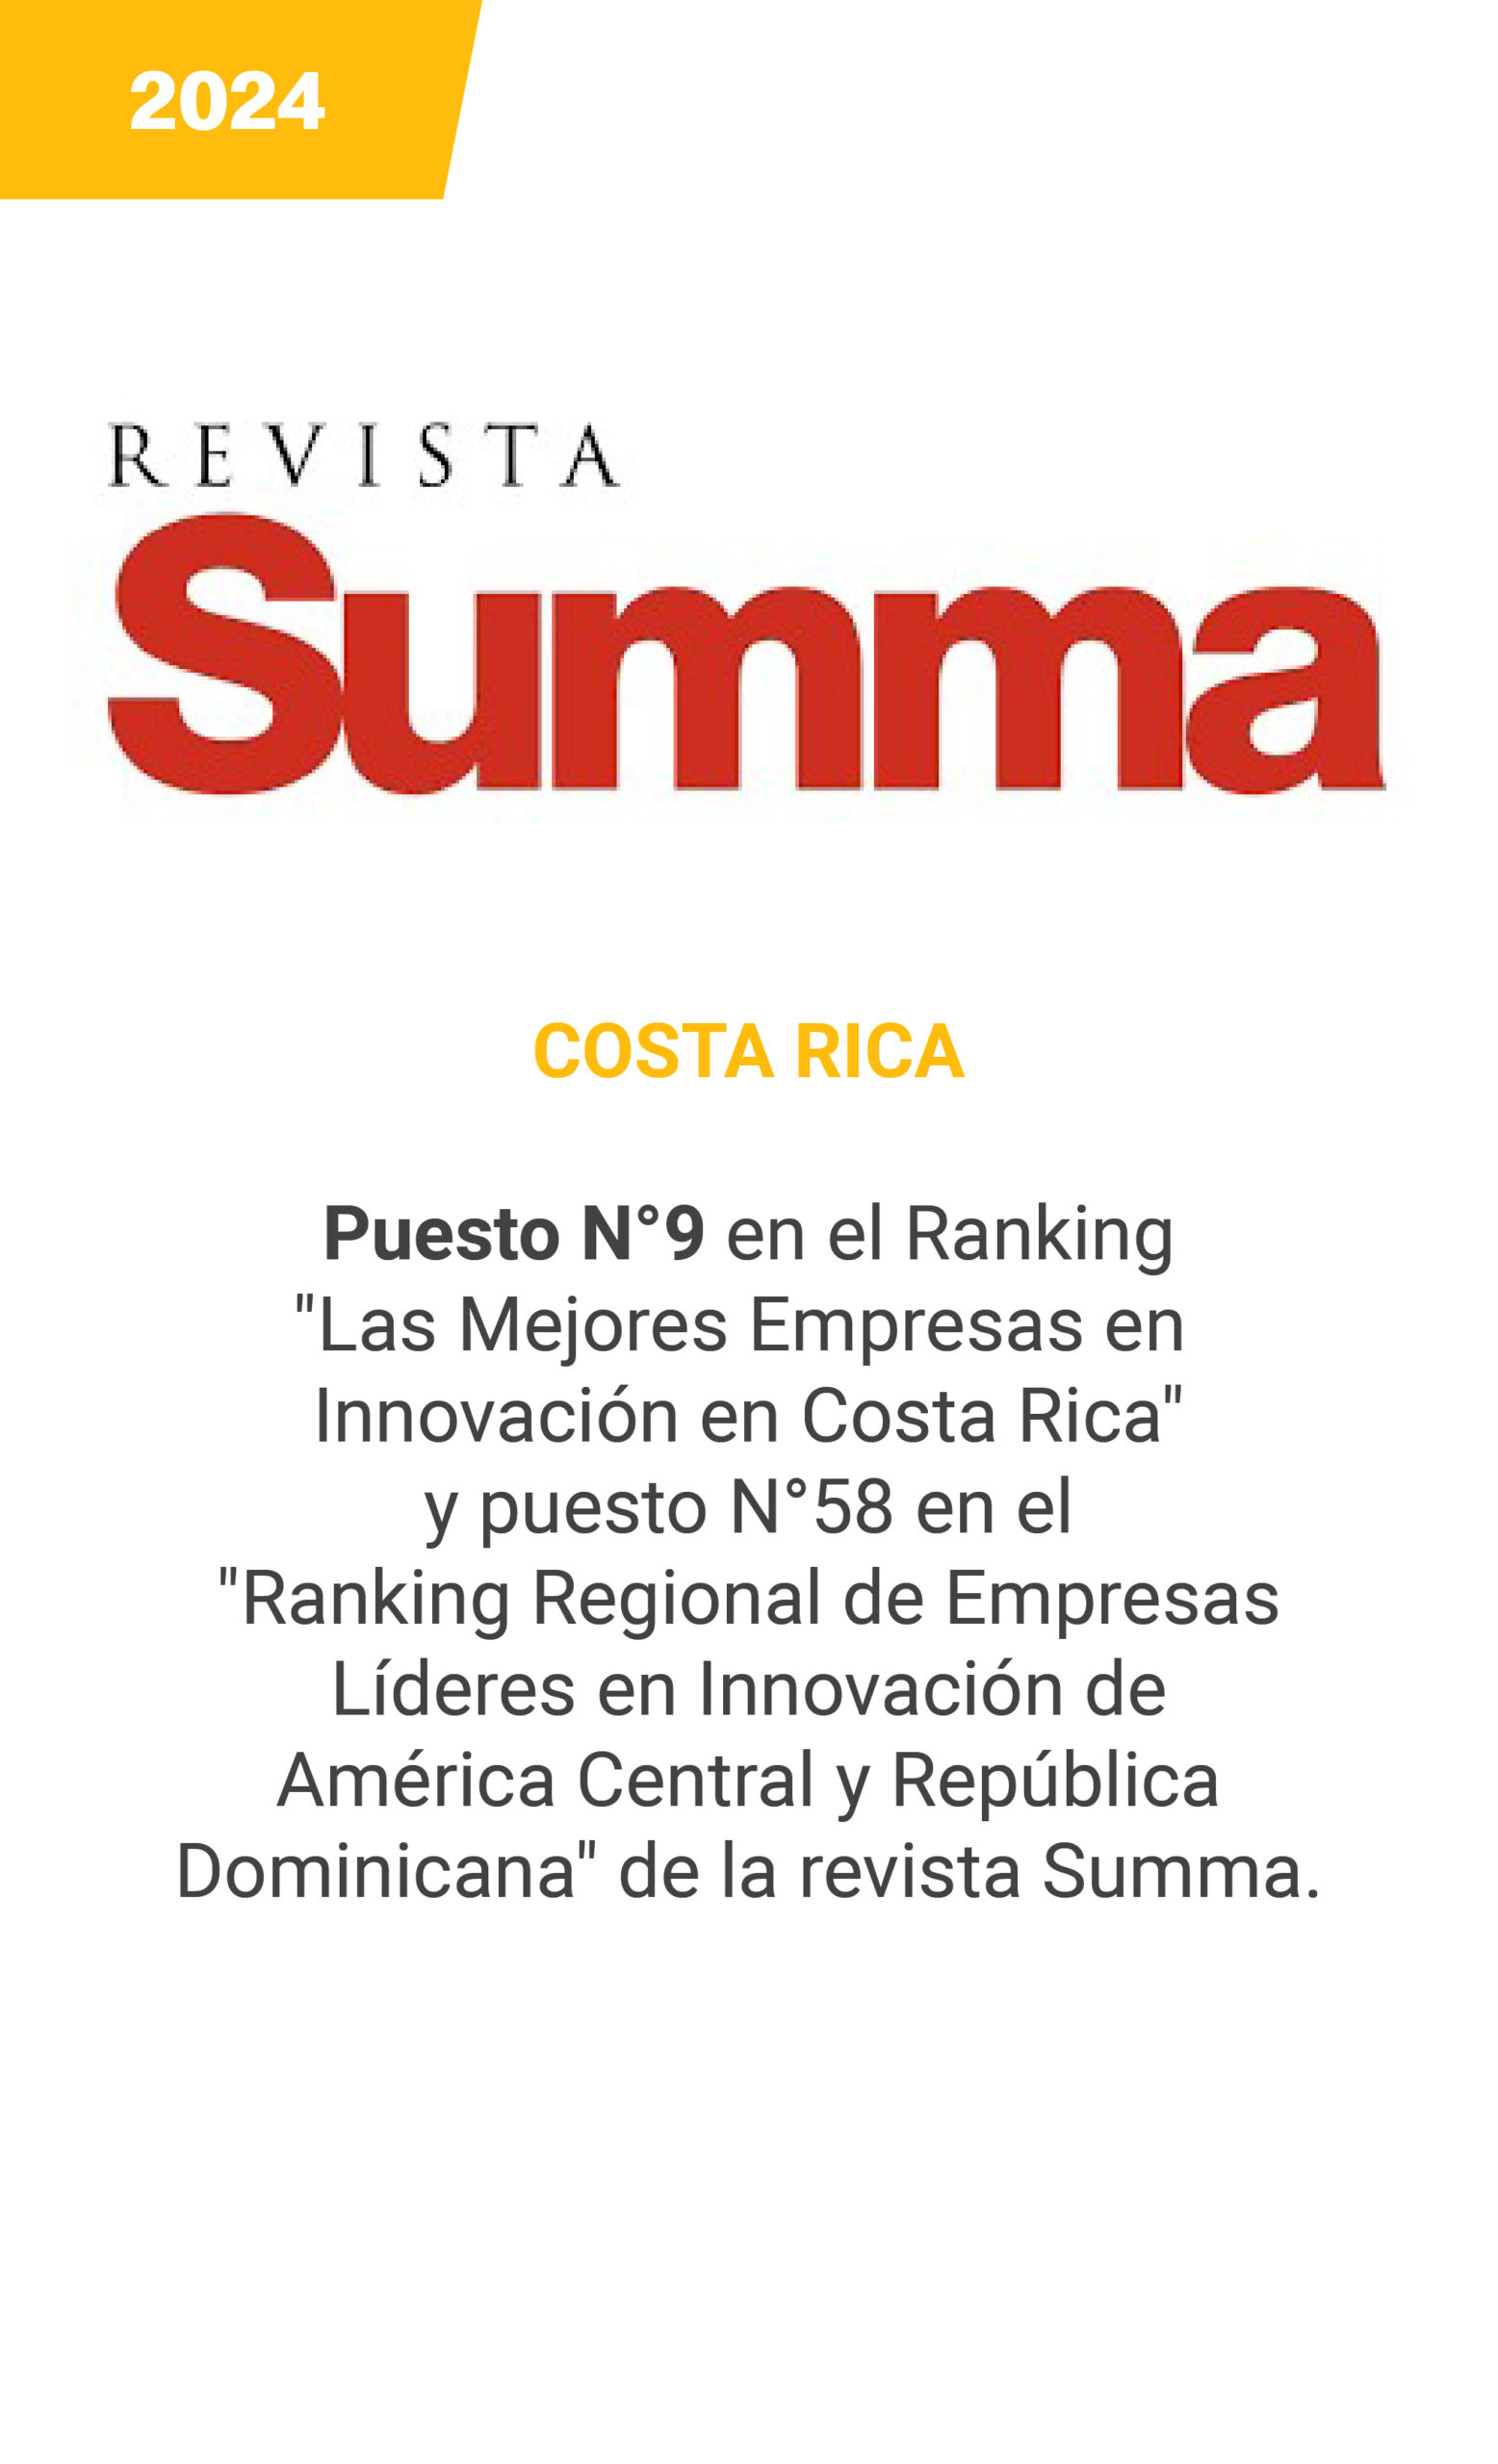 SUMMA - Costa Rica 2024 - mobile